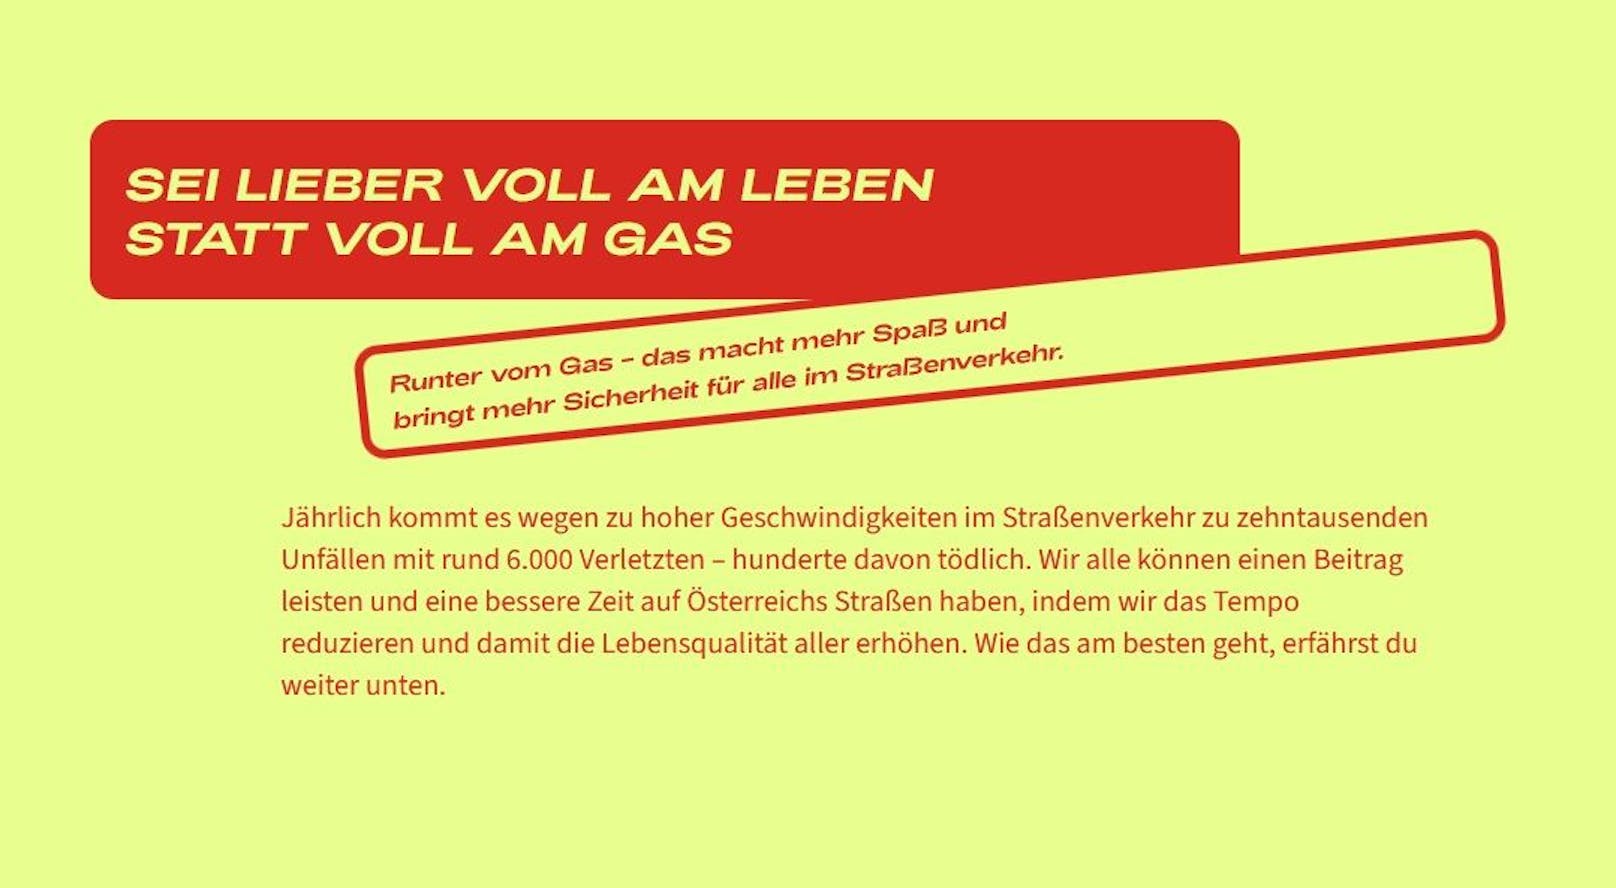 Vollamleben.at" – eine Website mit Tipps gegen das Rasen mit dem Auto